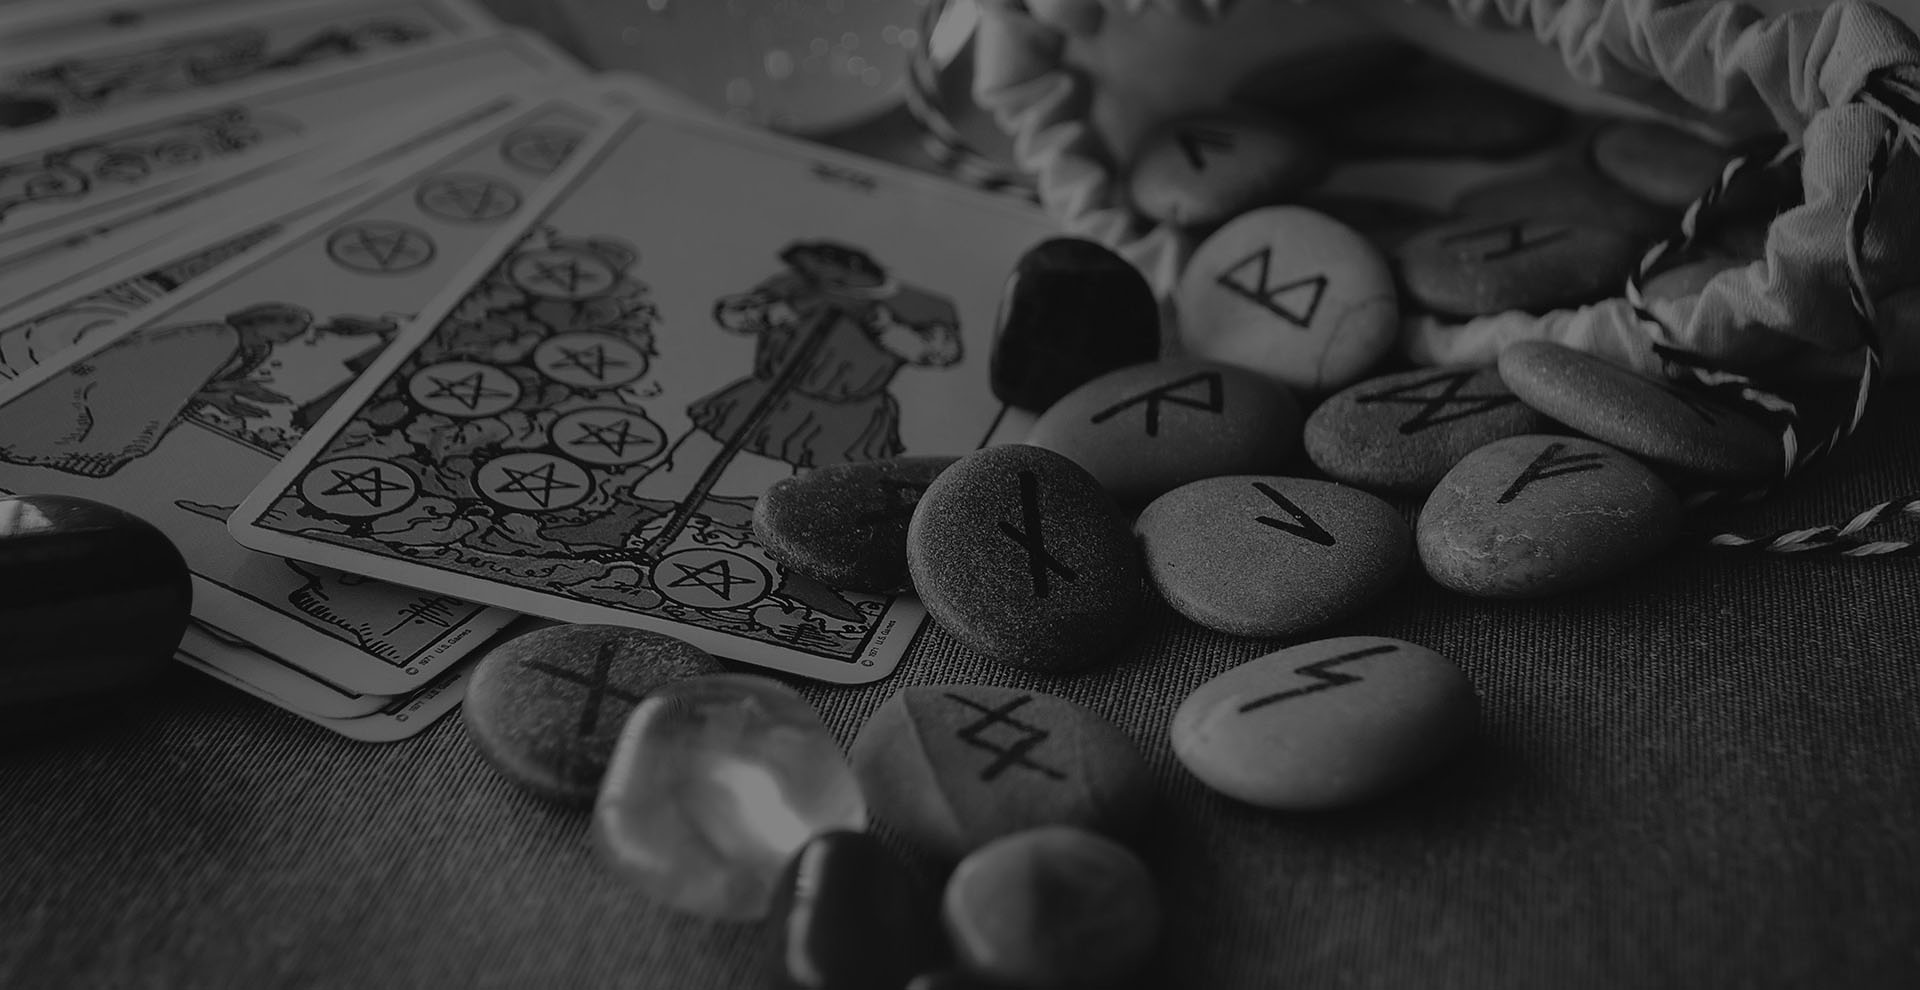 Tarot Cards and Runes